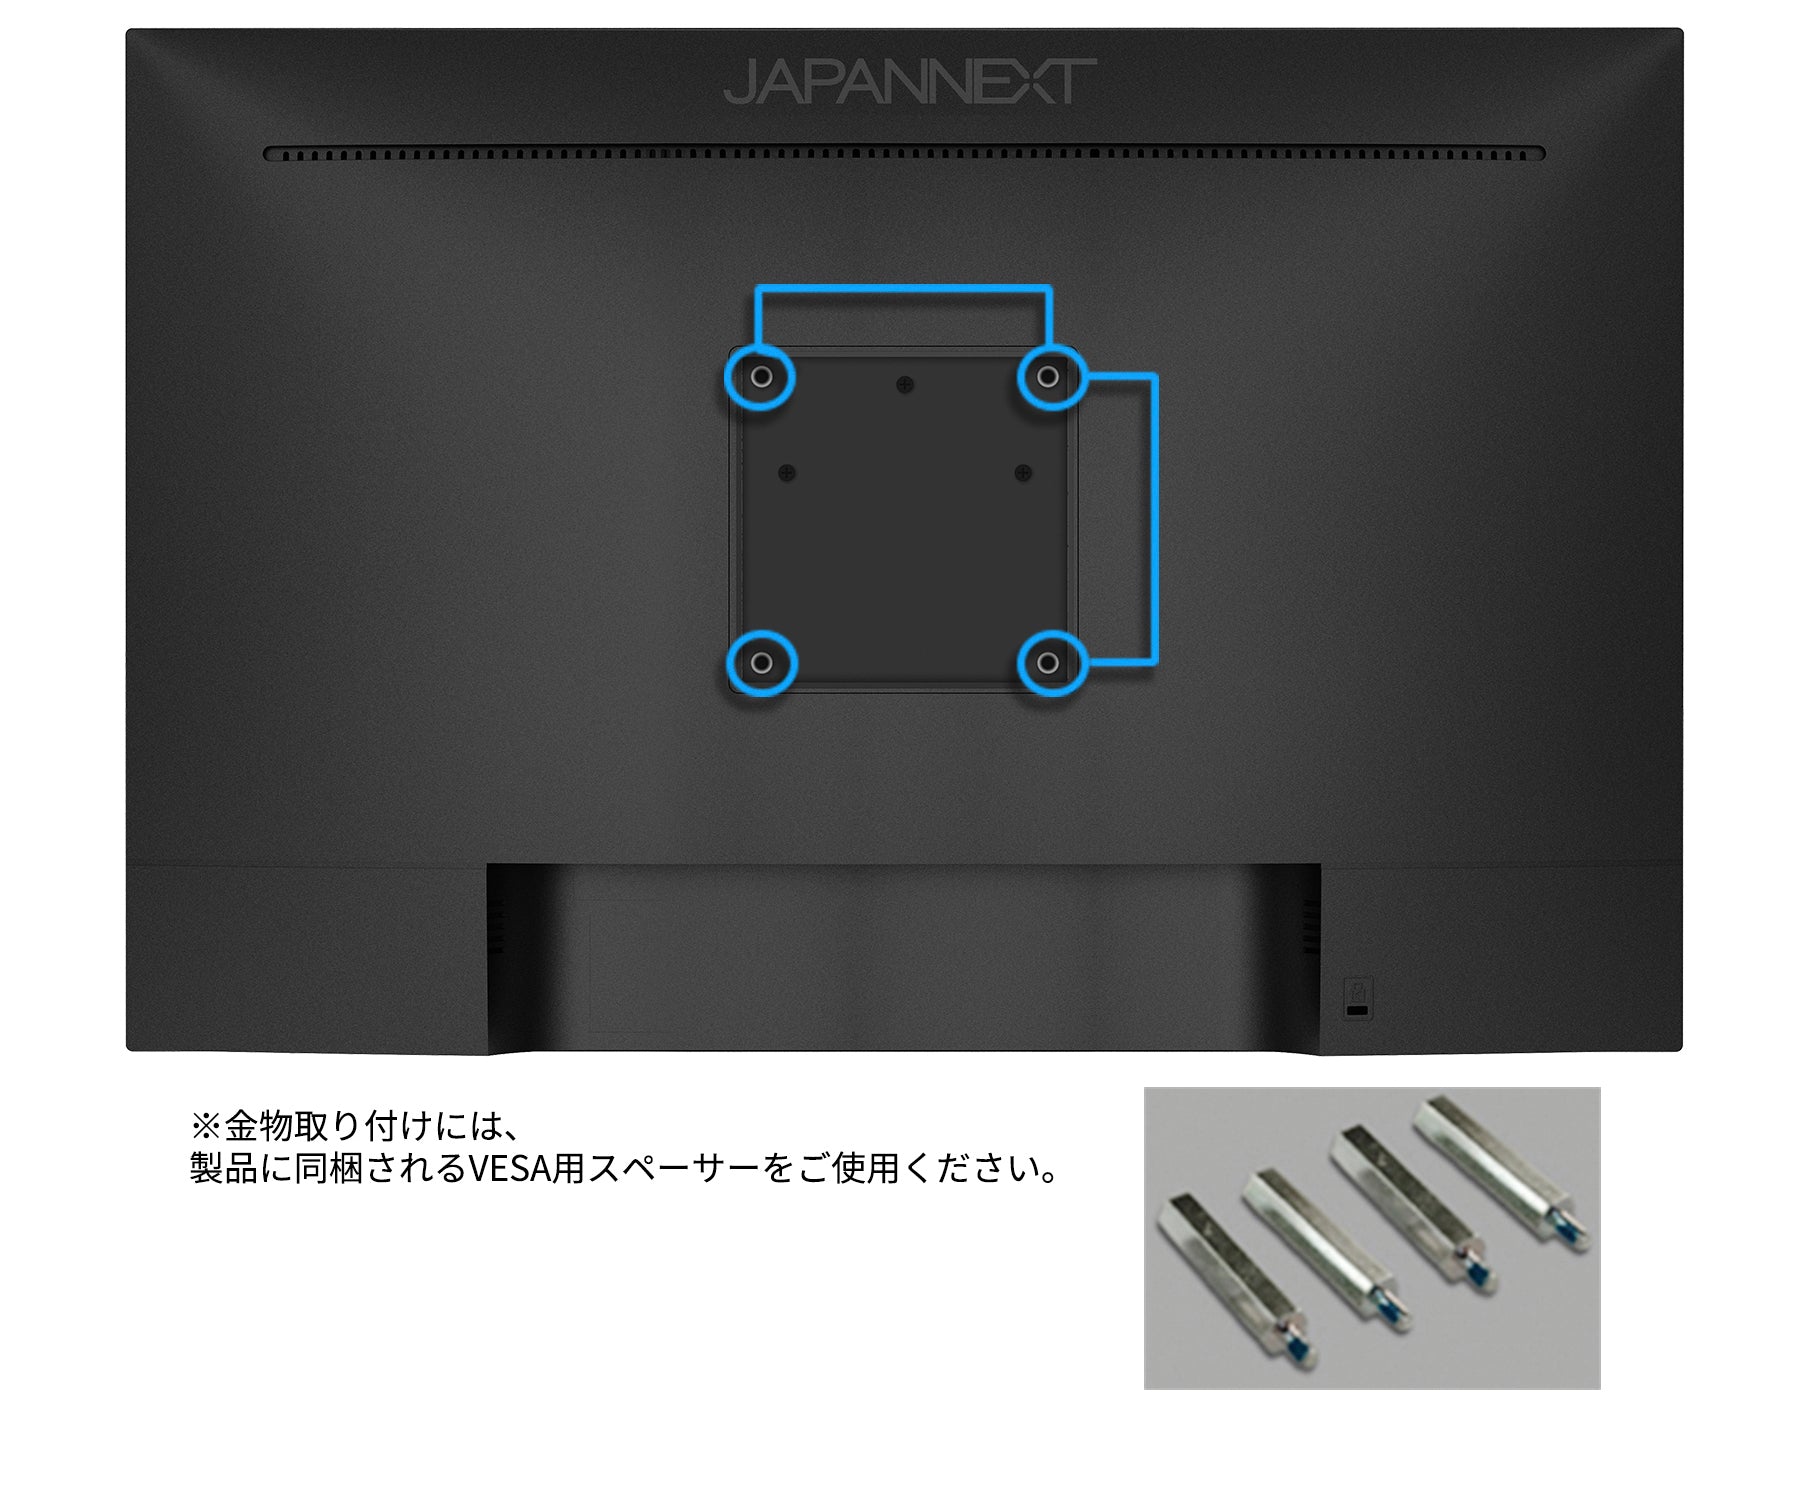 JAPANNEXT 24インチ IPSパネル搭載 WUXGA(1920x1200)解像度 